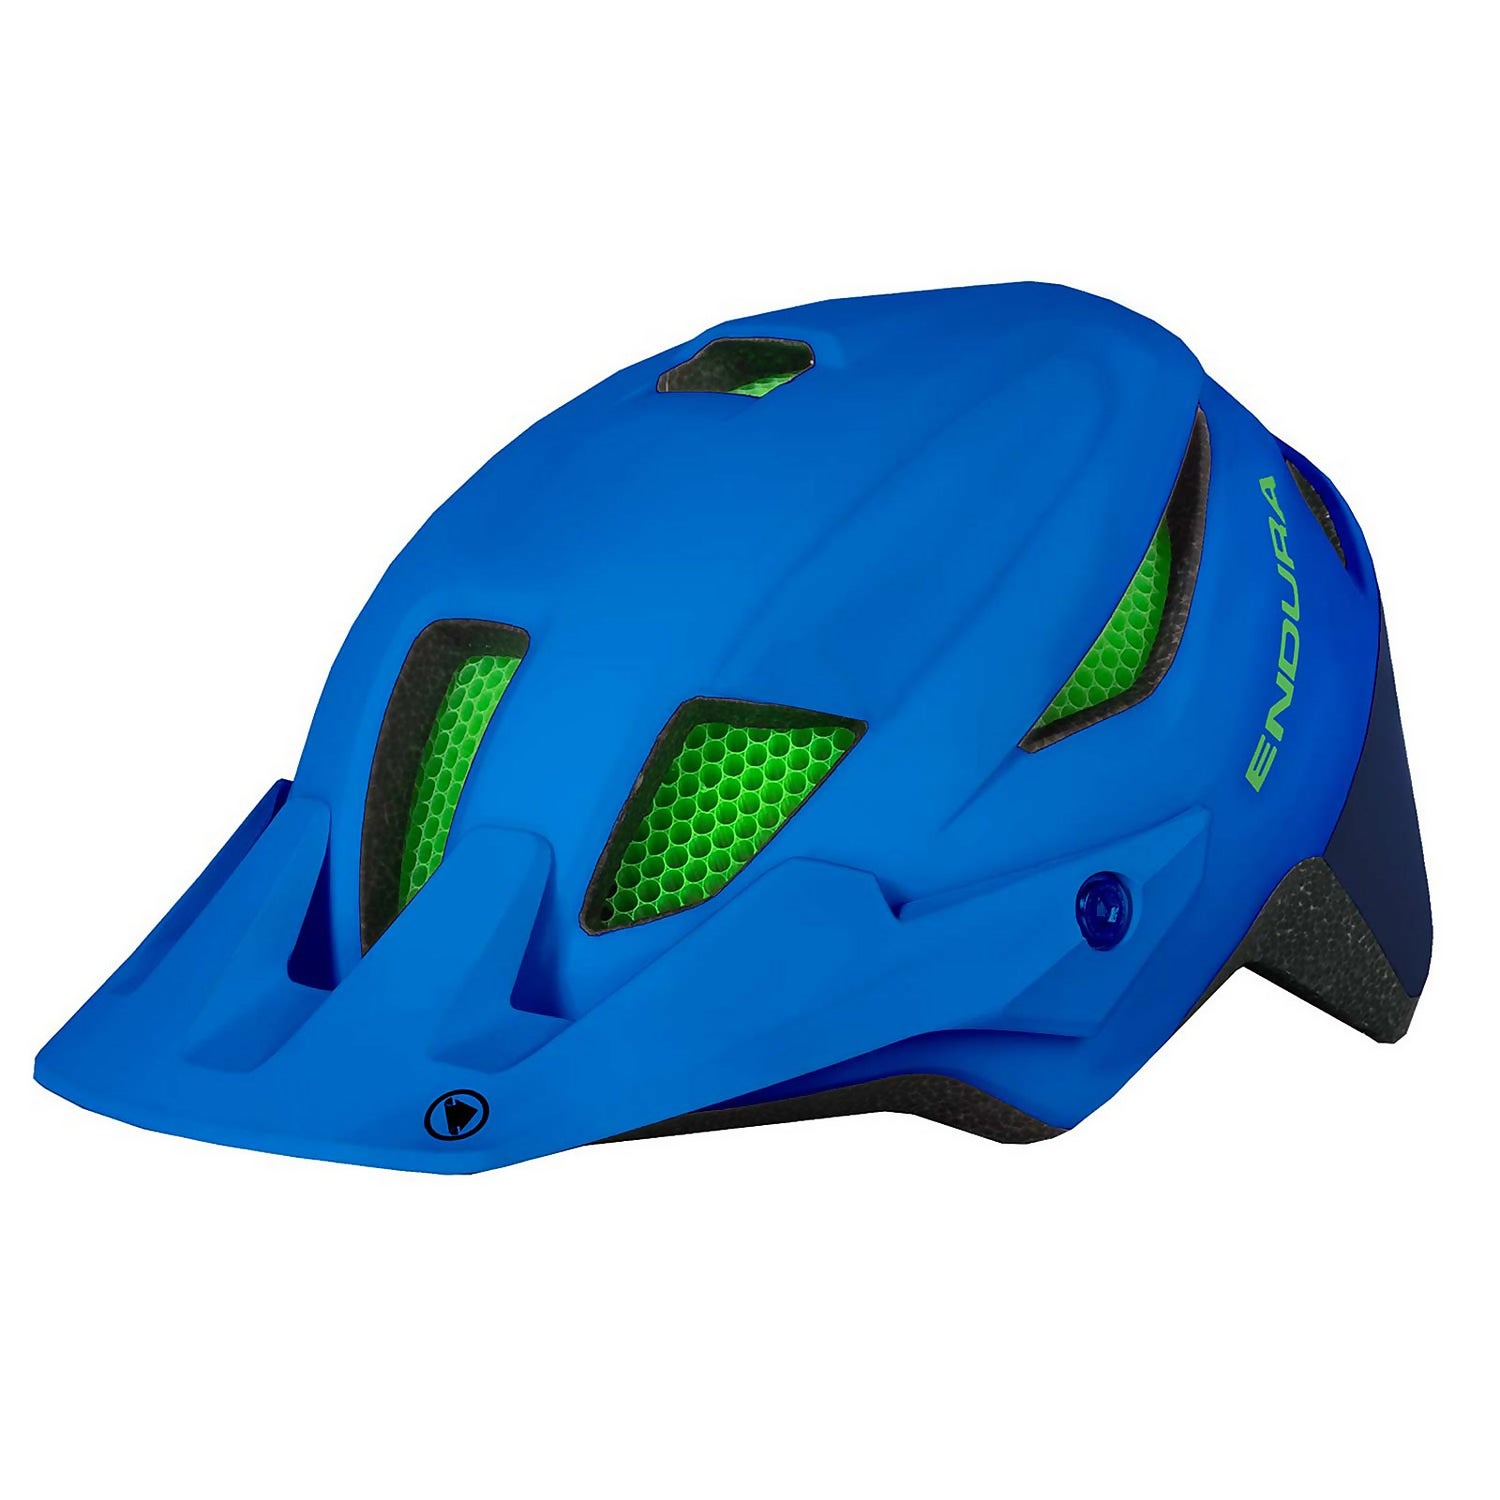 Kids's MT500JR Youth Helmet - Azure Blue - One Size